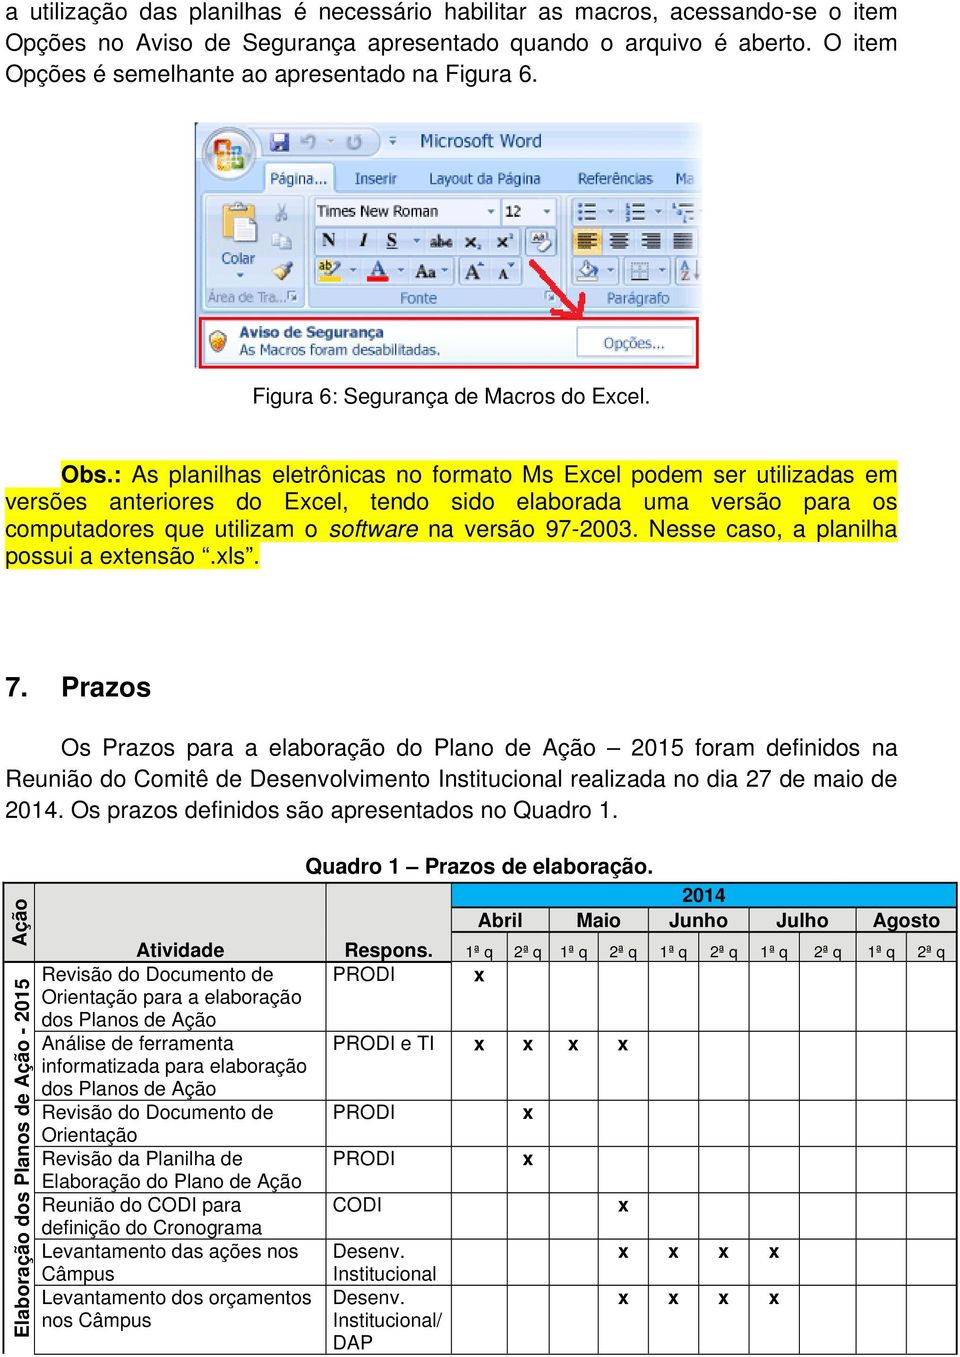 : As planilhas eletrônicas no formato Ms Ecel podem ser utilizadas em versões anteriores do Ecel, tendo sido elaborada uma versão para os computadores que utilizam o software na versão 97-2003.